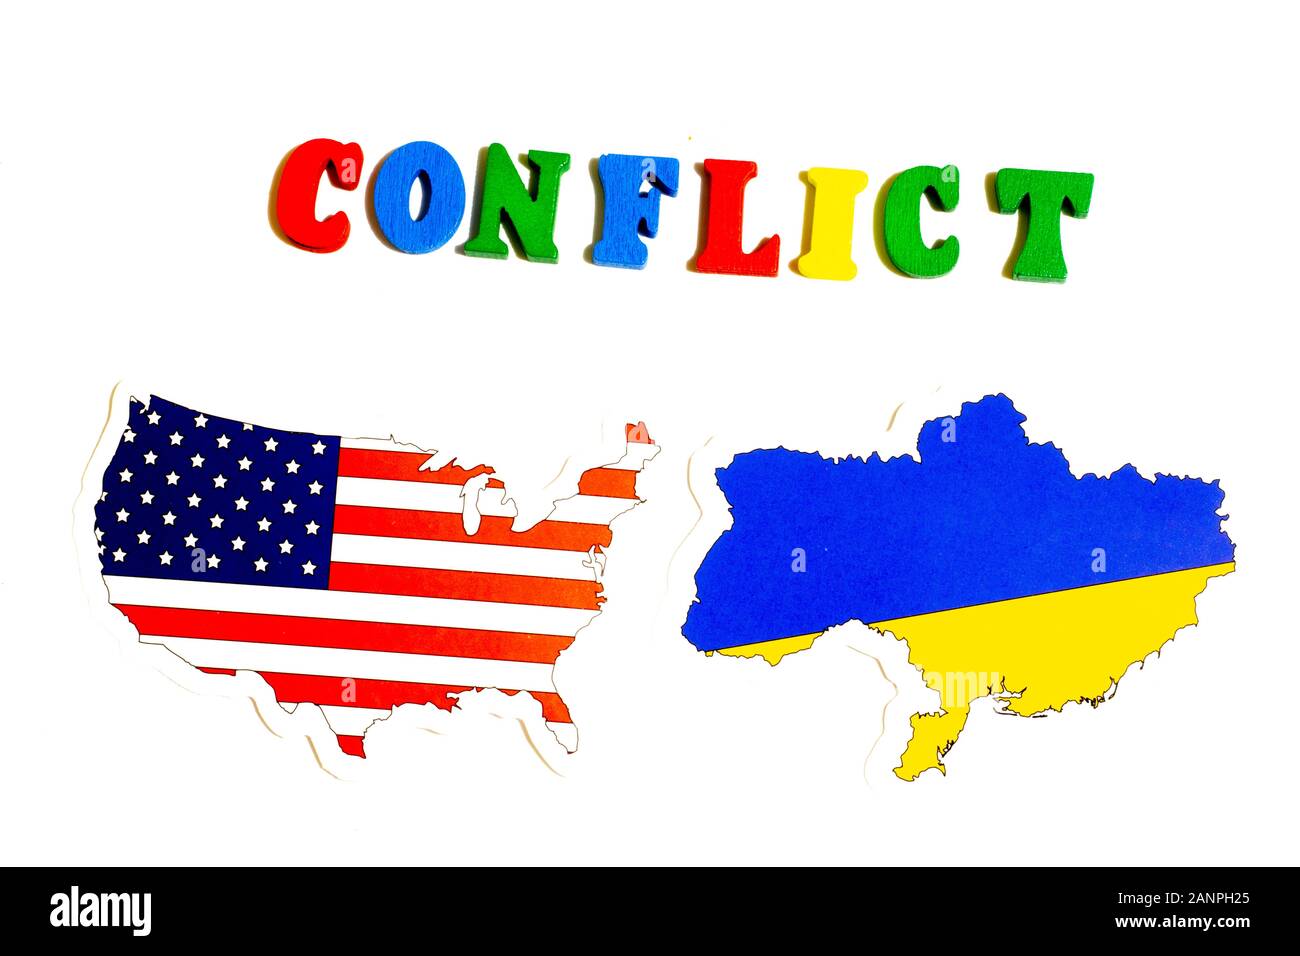 Los Angeles, Californie, États-Unis - 17 janvier 2020: Illustration du concept de conflit entre les États-Unis et l'Ukraine. Drapeaux Nationaux, Éditorial Illustratif Banque D'Images